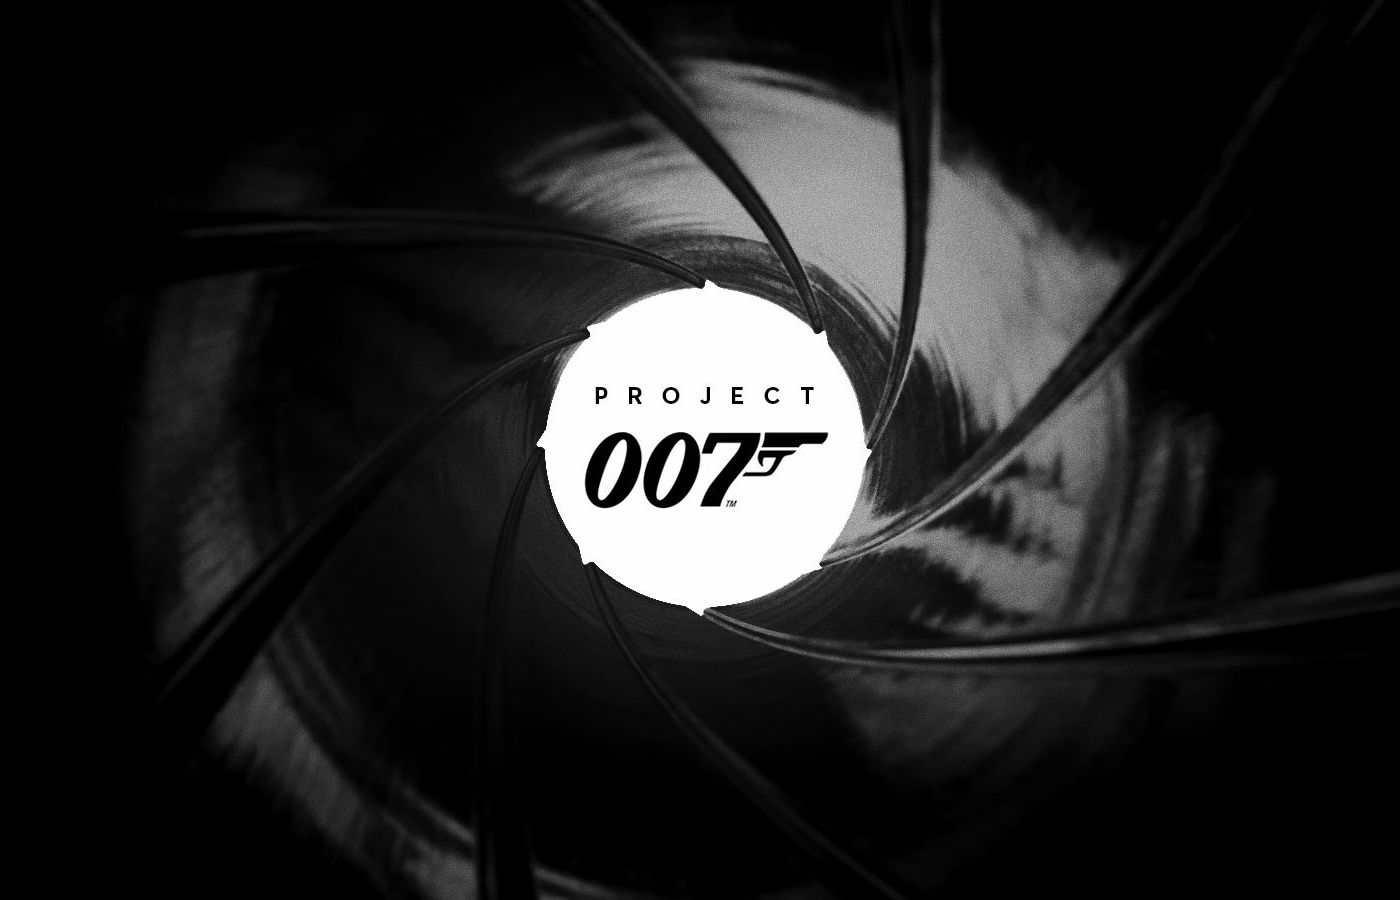 Les auteurs de Hitman dévoilent Project 007, un jeu (évidemment) basé sur James Bond